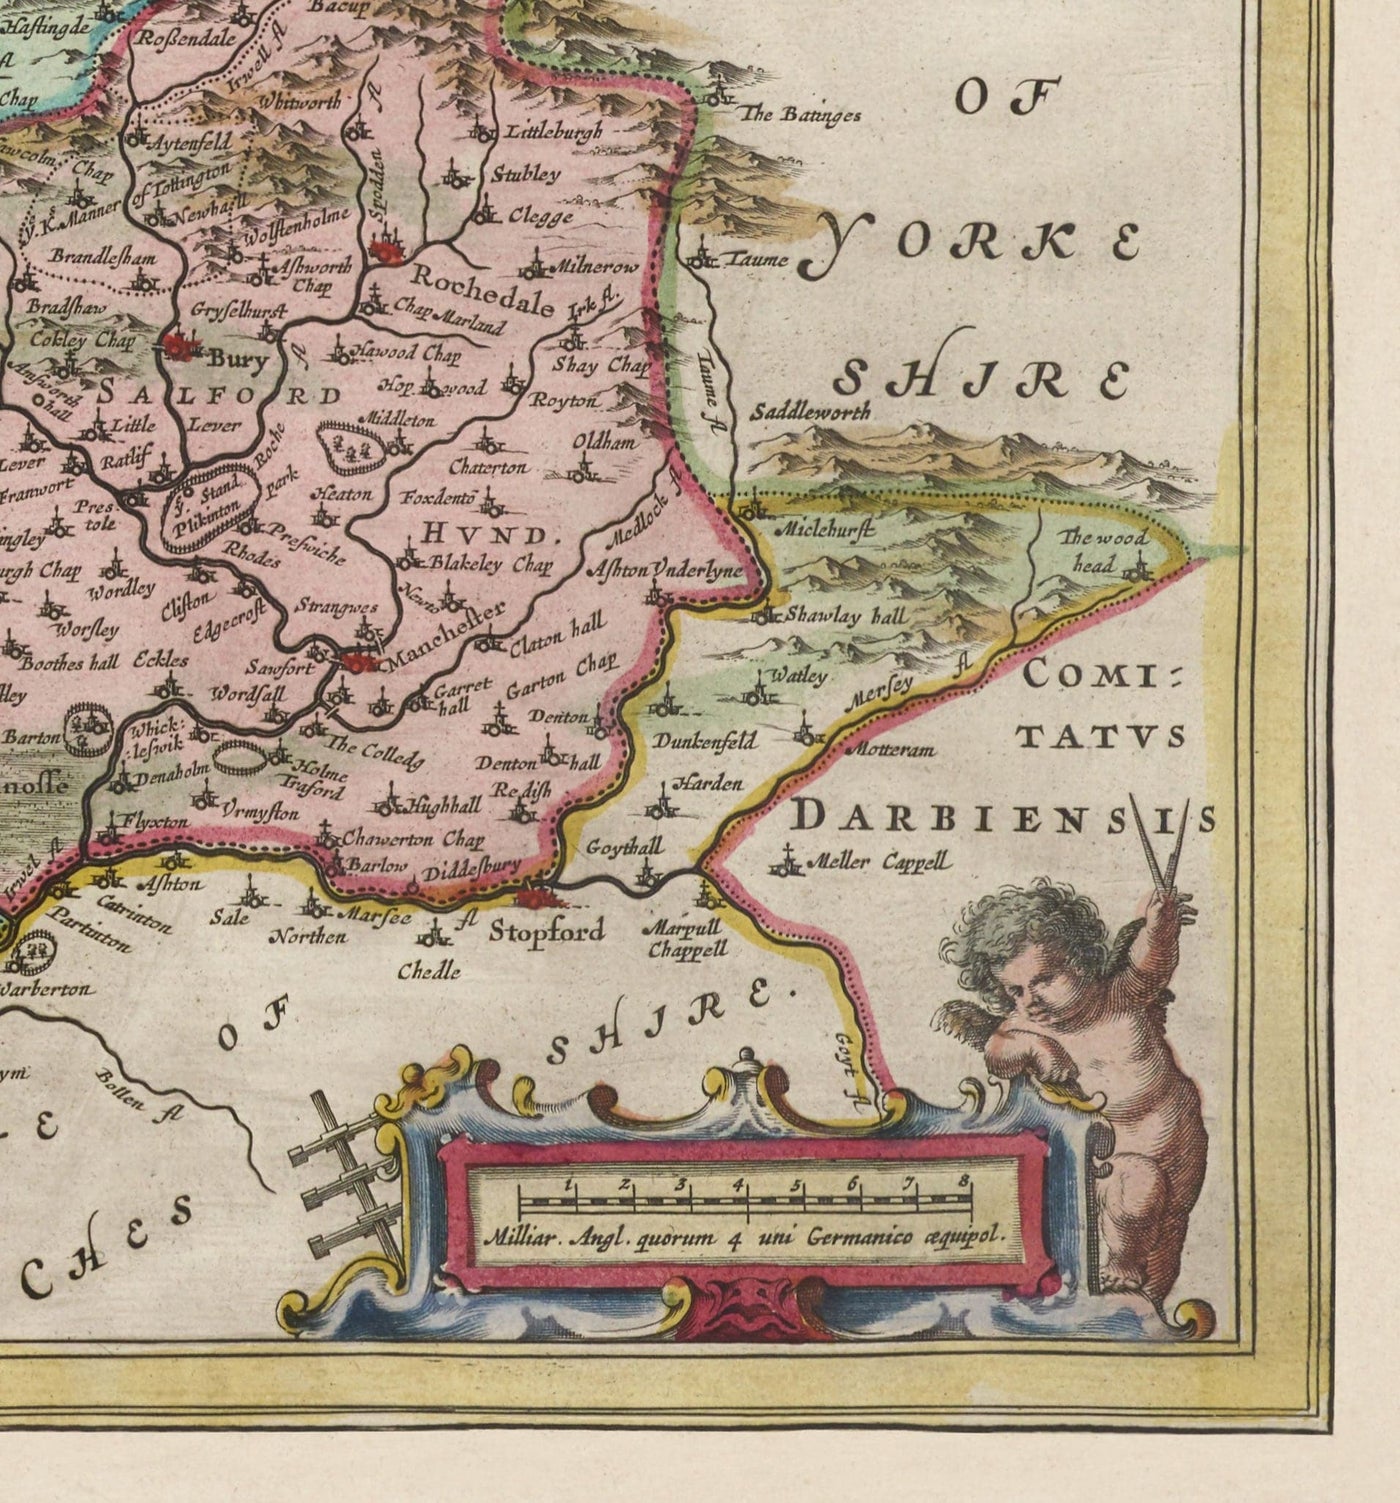 Alte Karte von Lancashire, 1611 von Joan Blaeu - Manchester, Liverpool, Preston, Blackburn